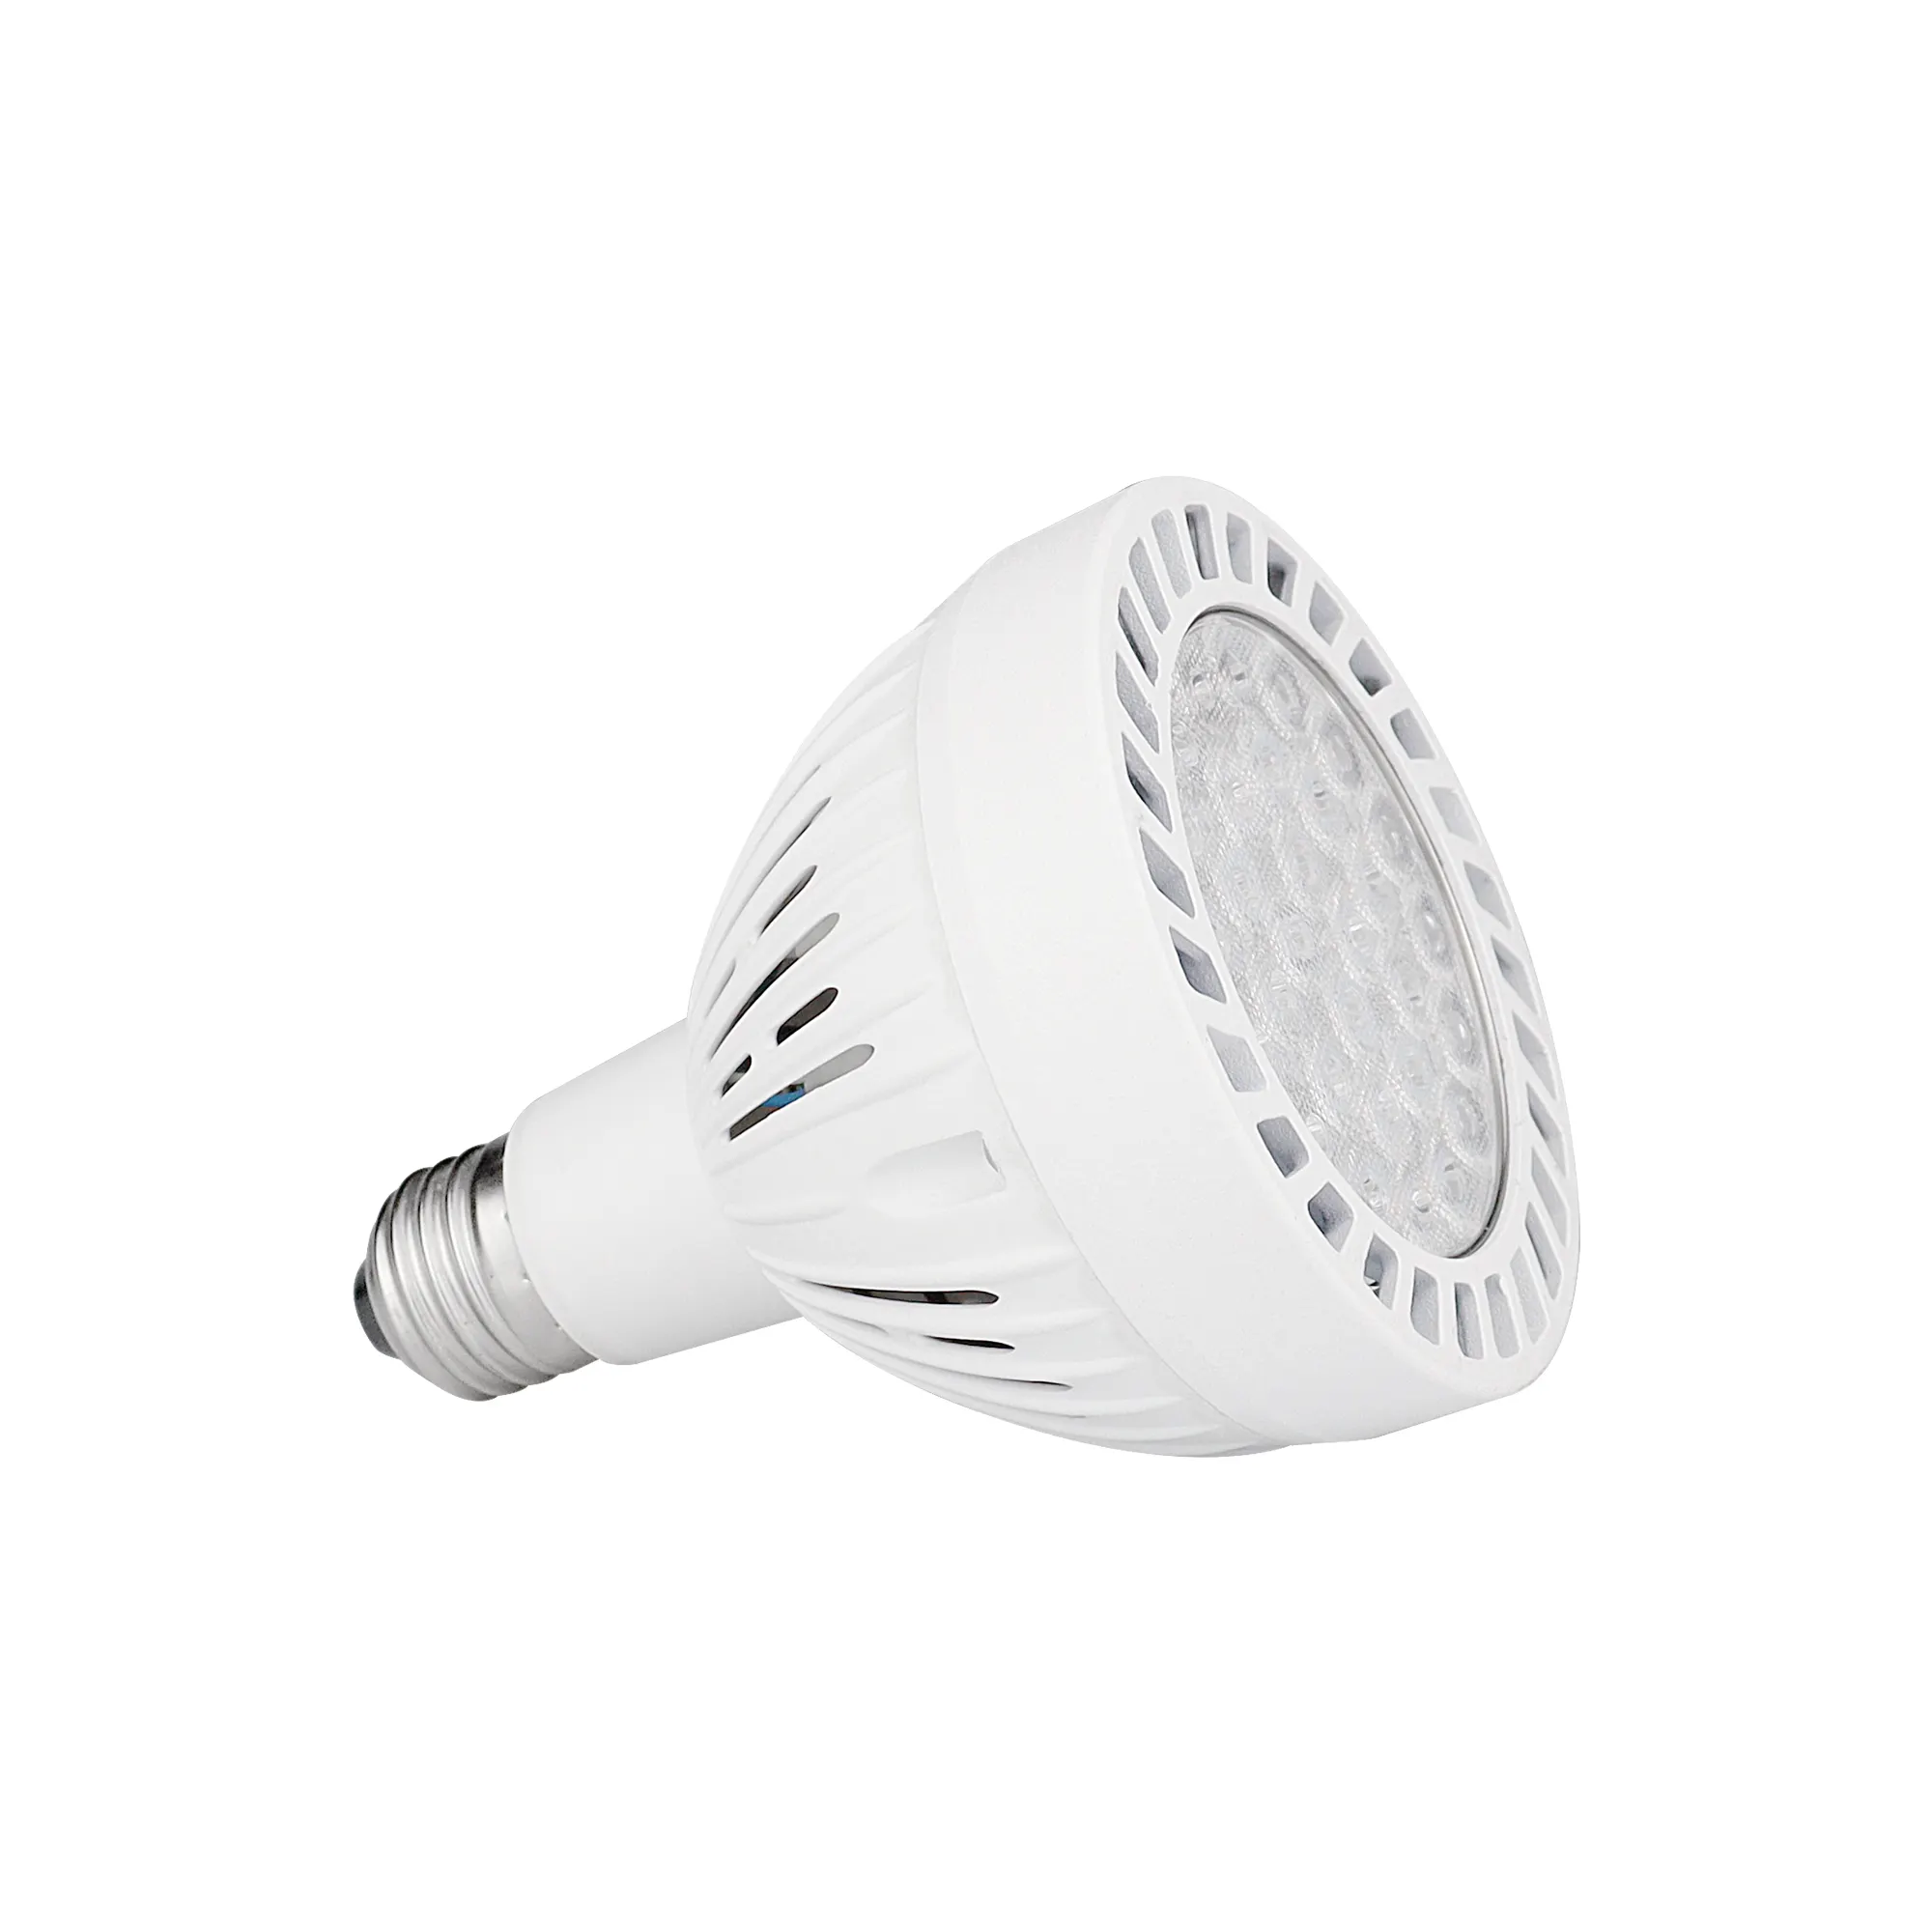 JHOW yüksek lümen LED ampul Par30 25W ışık saf alüminyum tasarım Par lamba Spot ışık